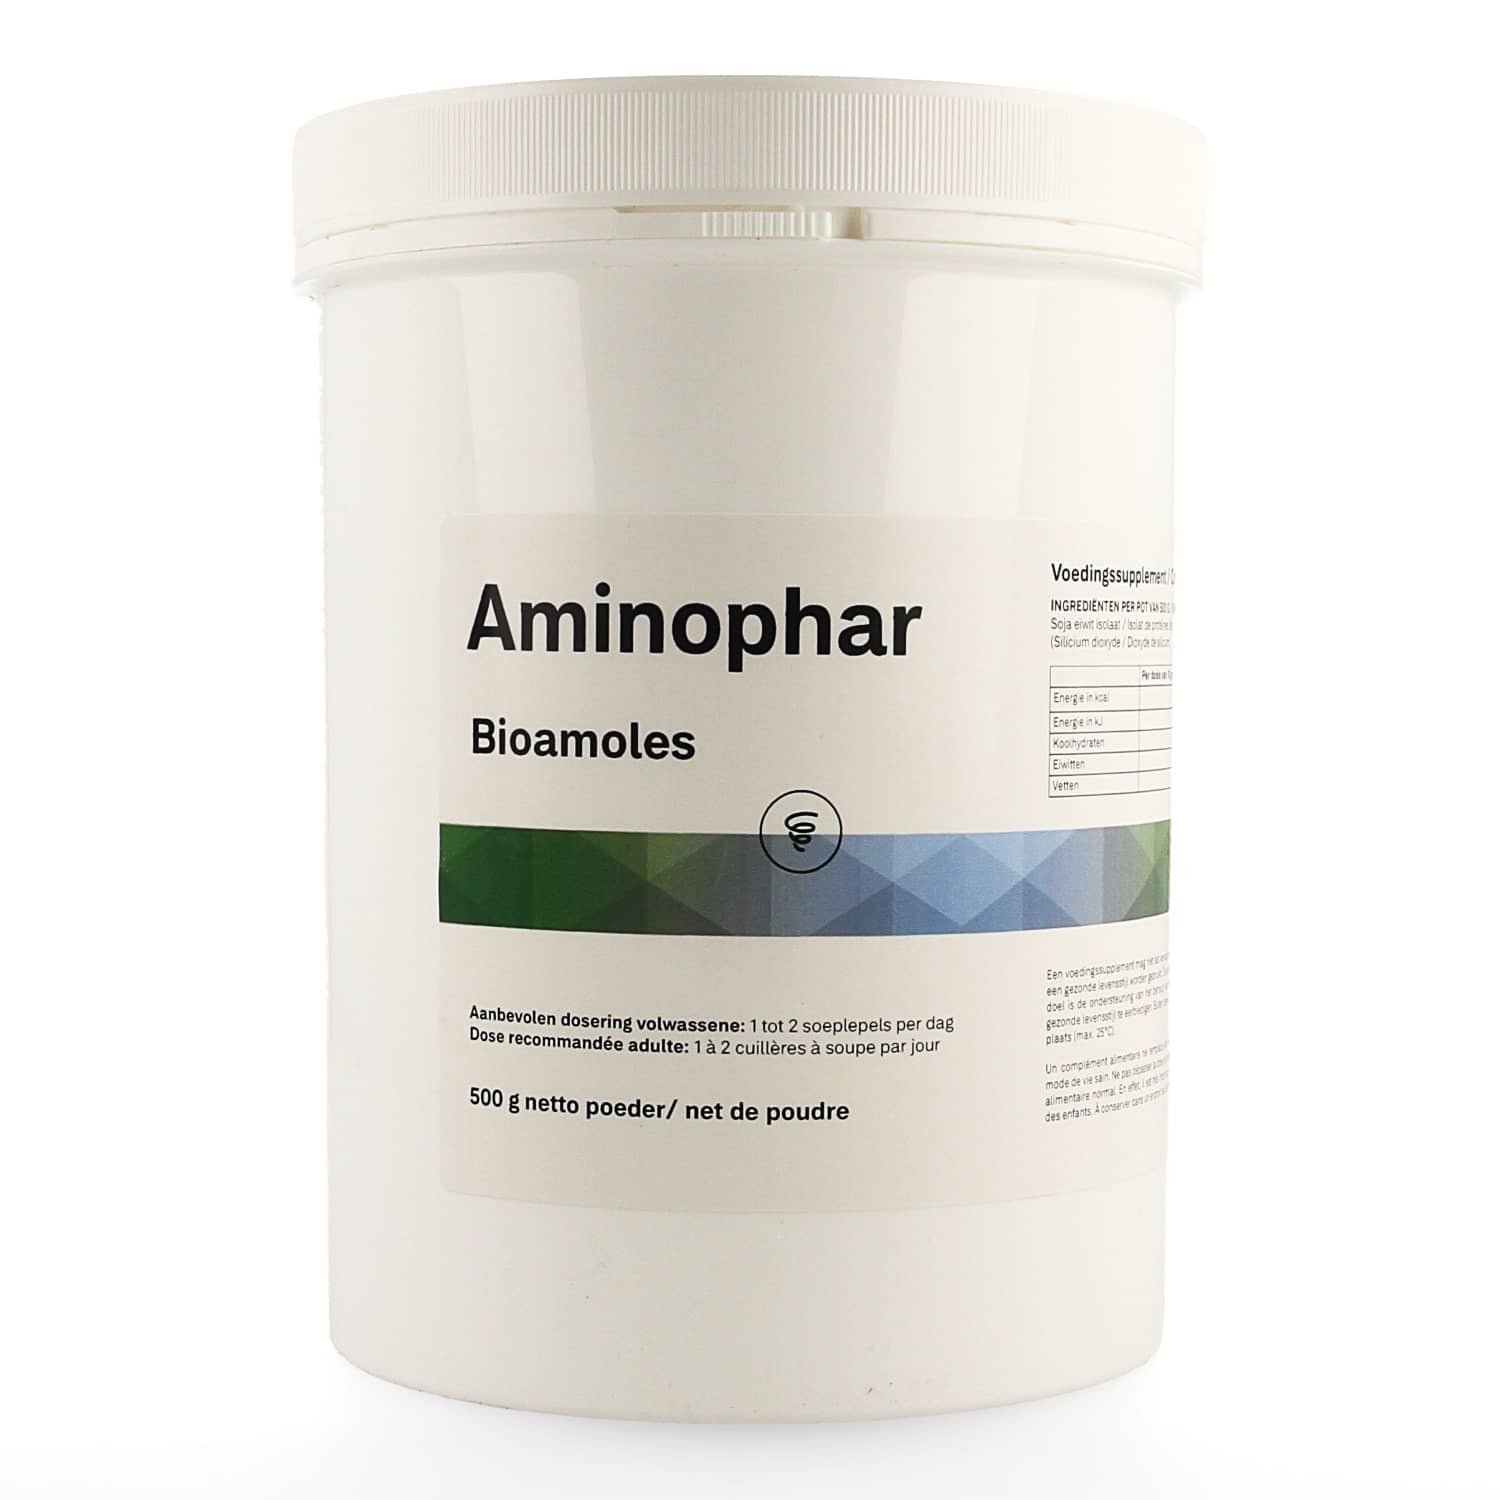 Bioamoles Aminophar